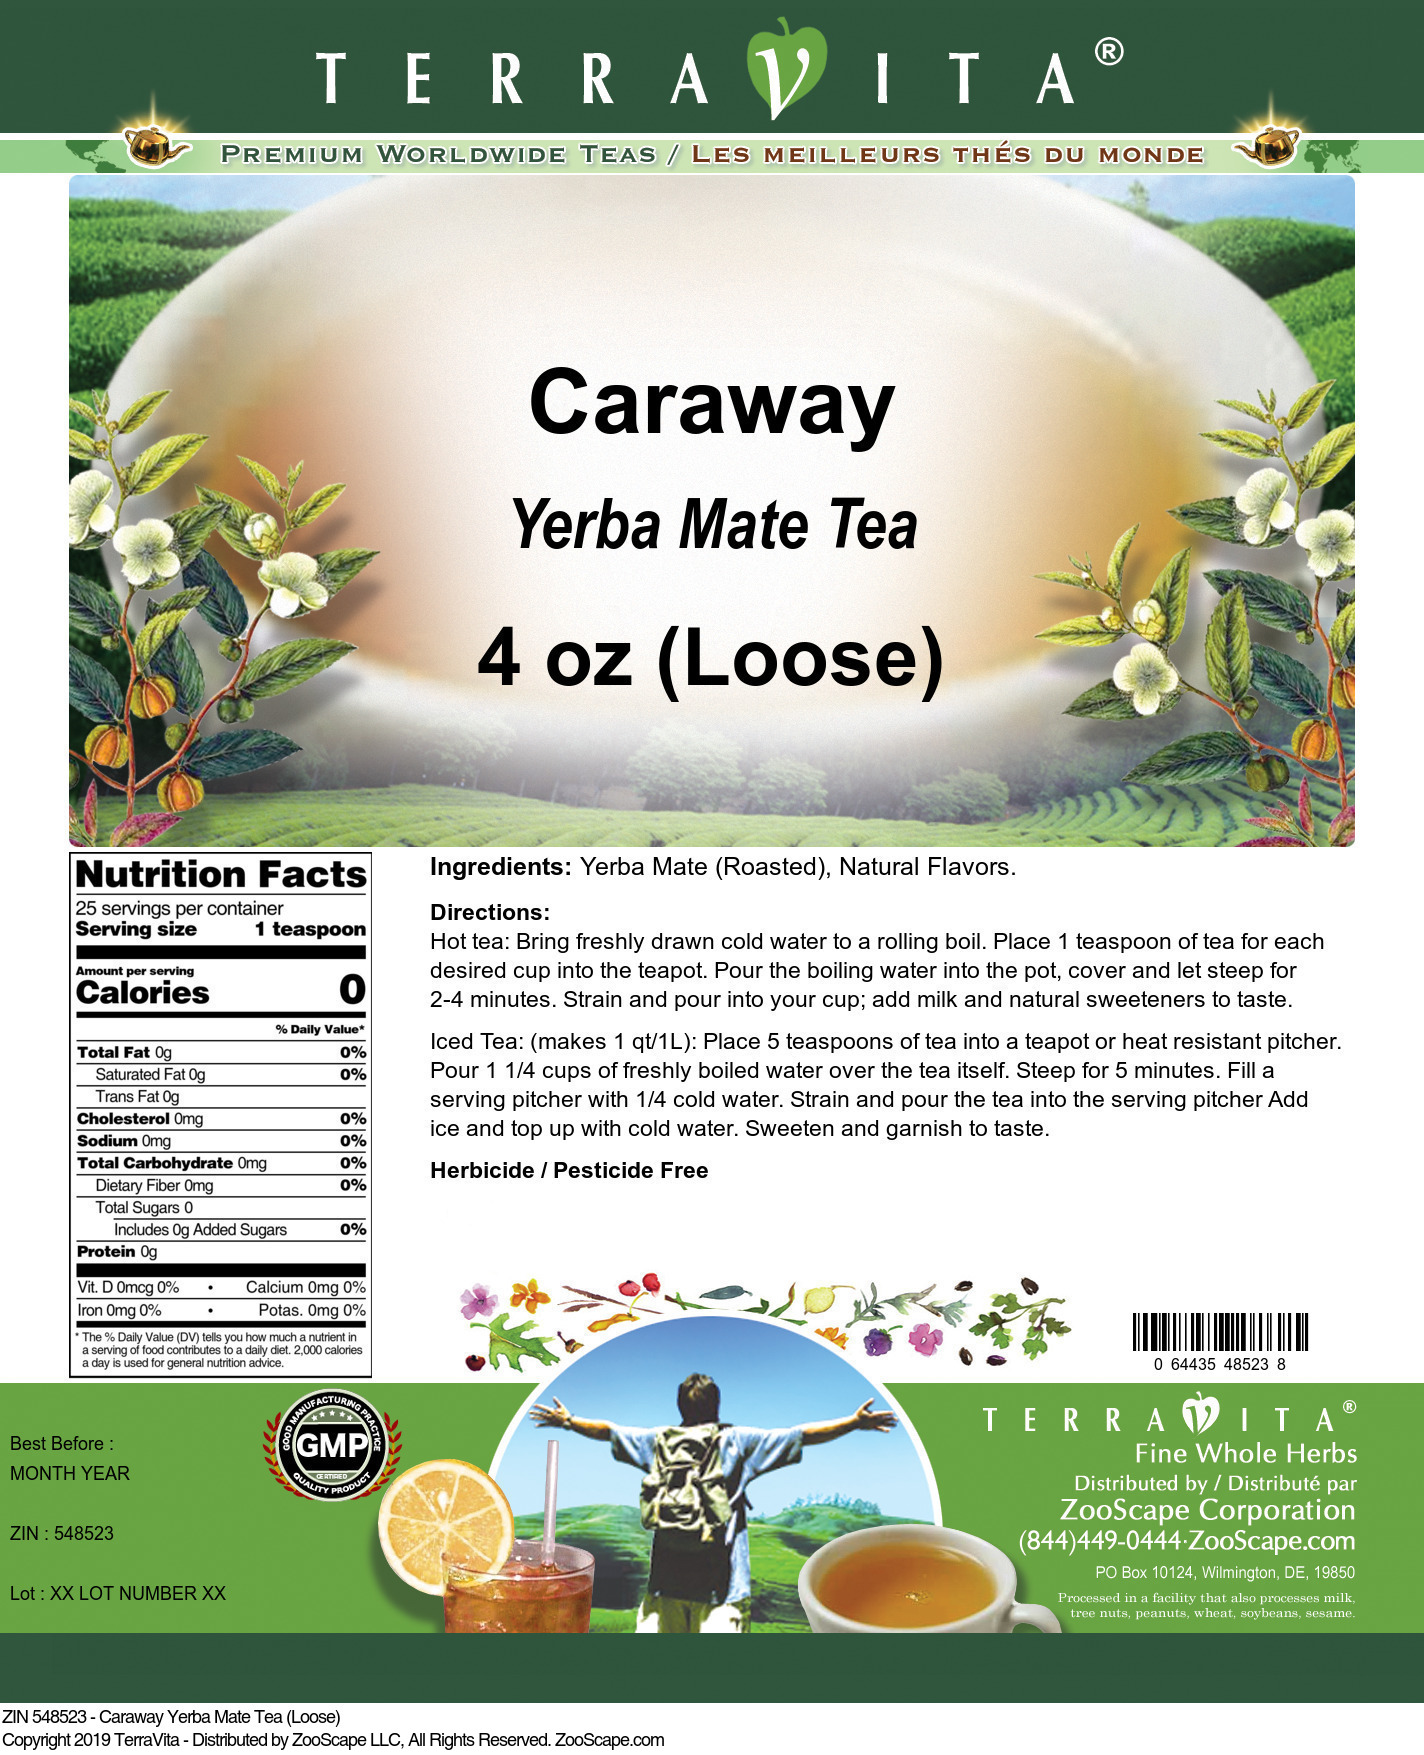 Caraway Yerba Mate Tea (Loose) - Label